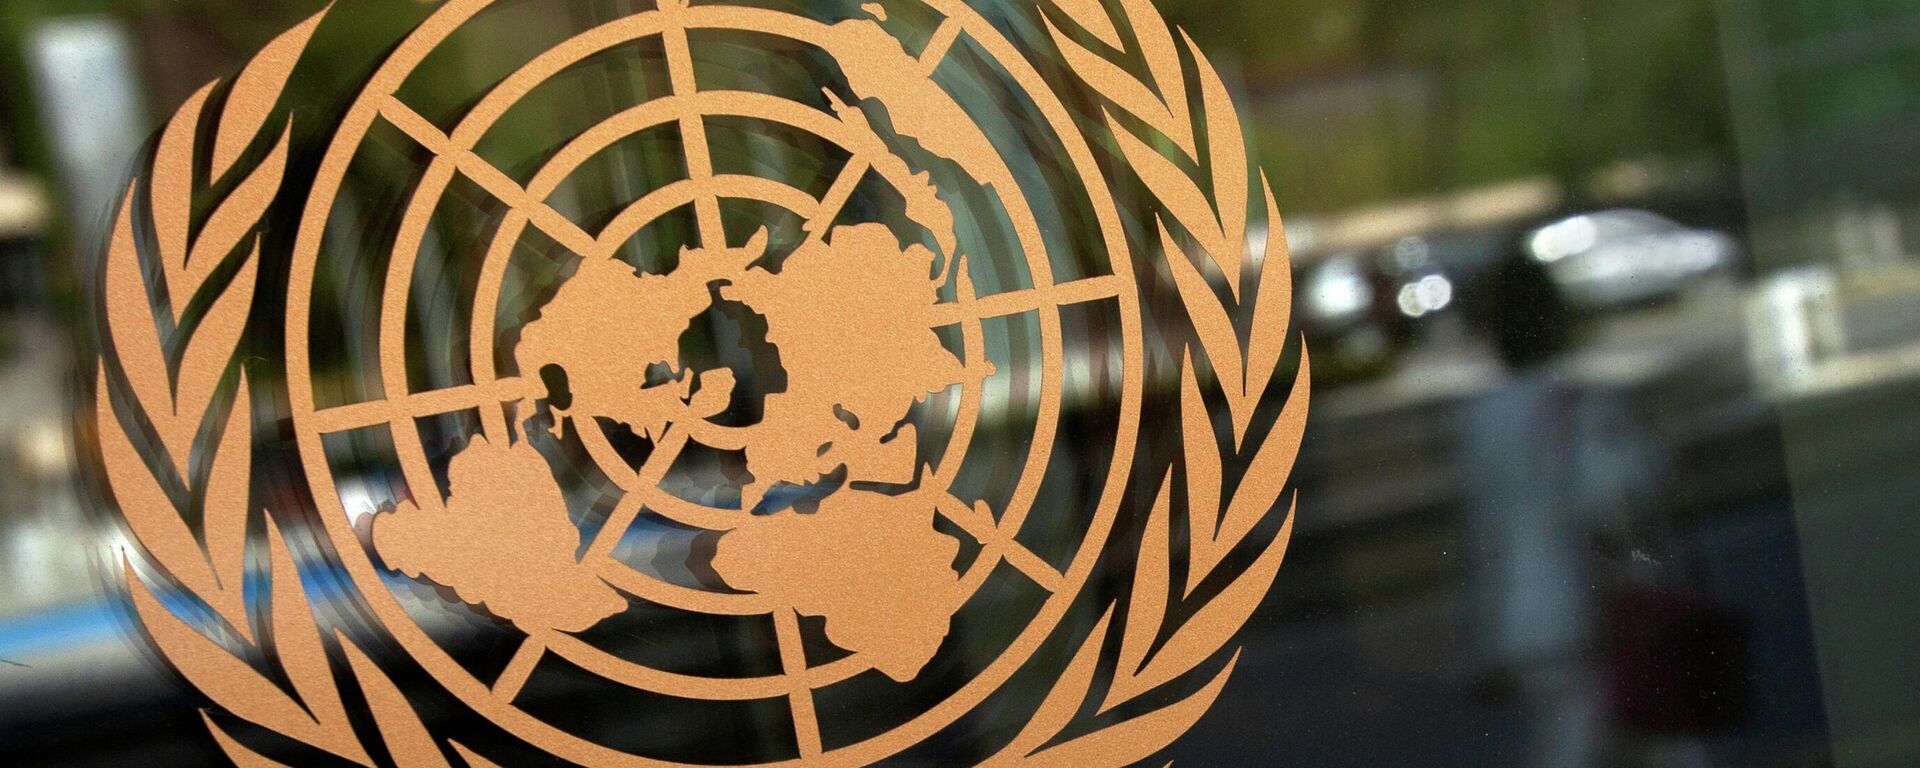 El logo de la ONU - Sputnik Mundo, 1920, 26.10.2021